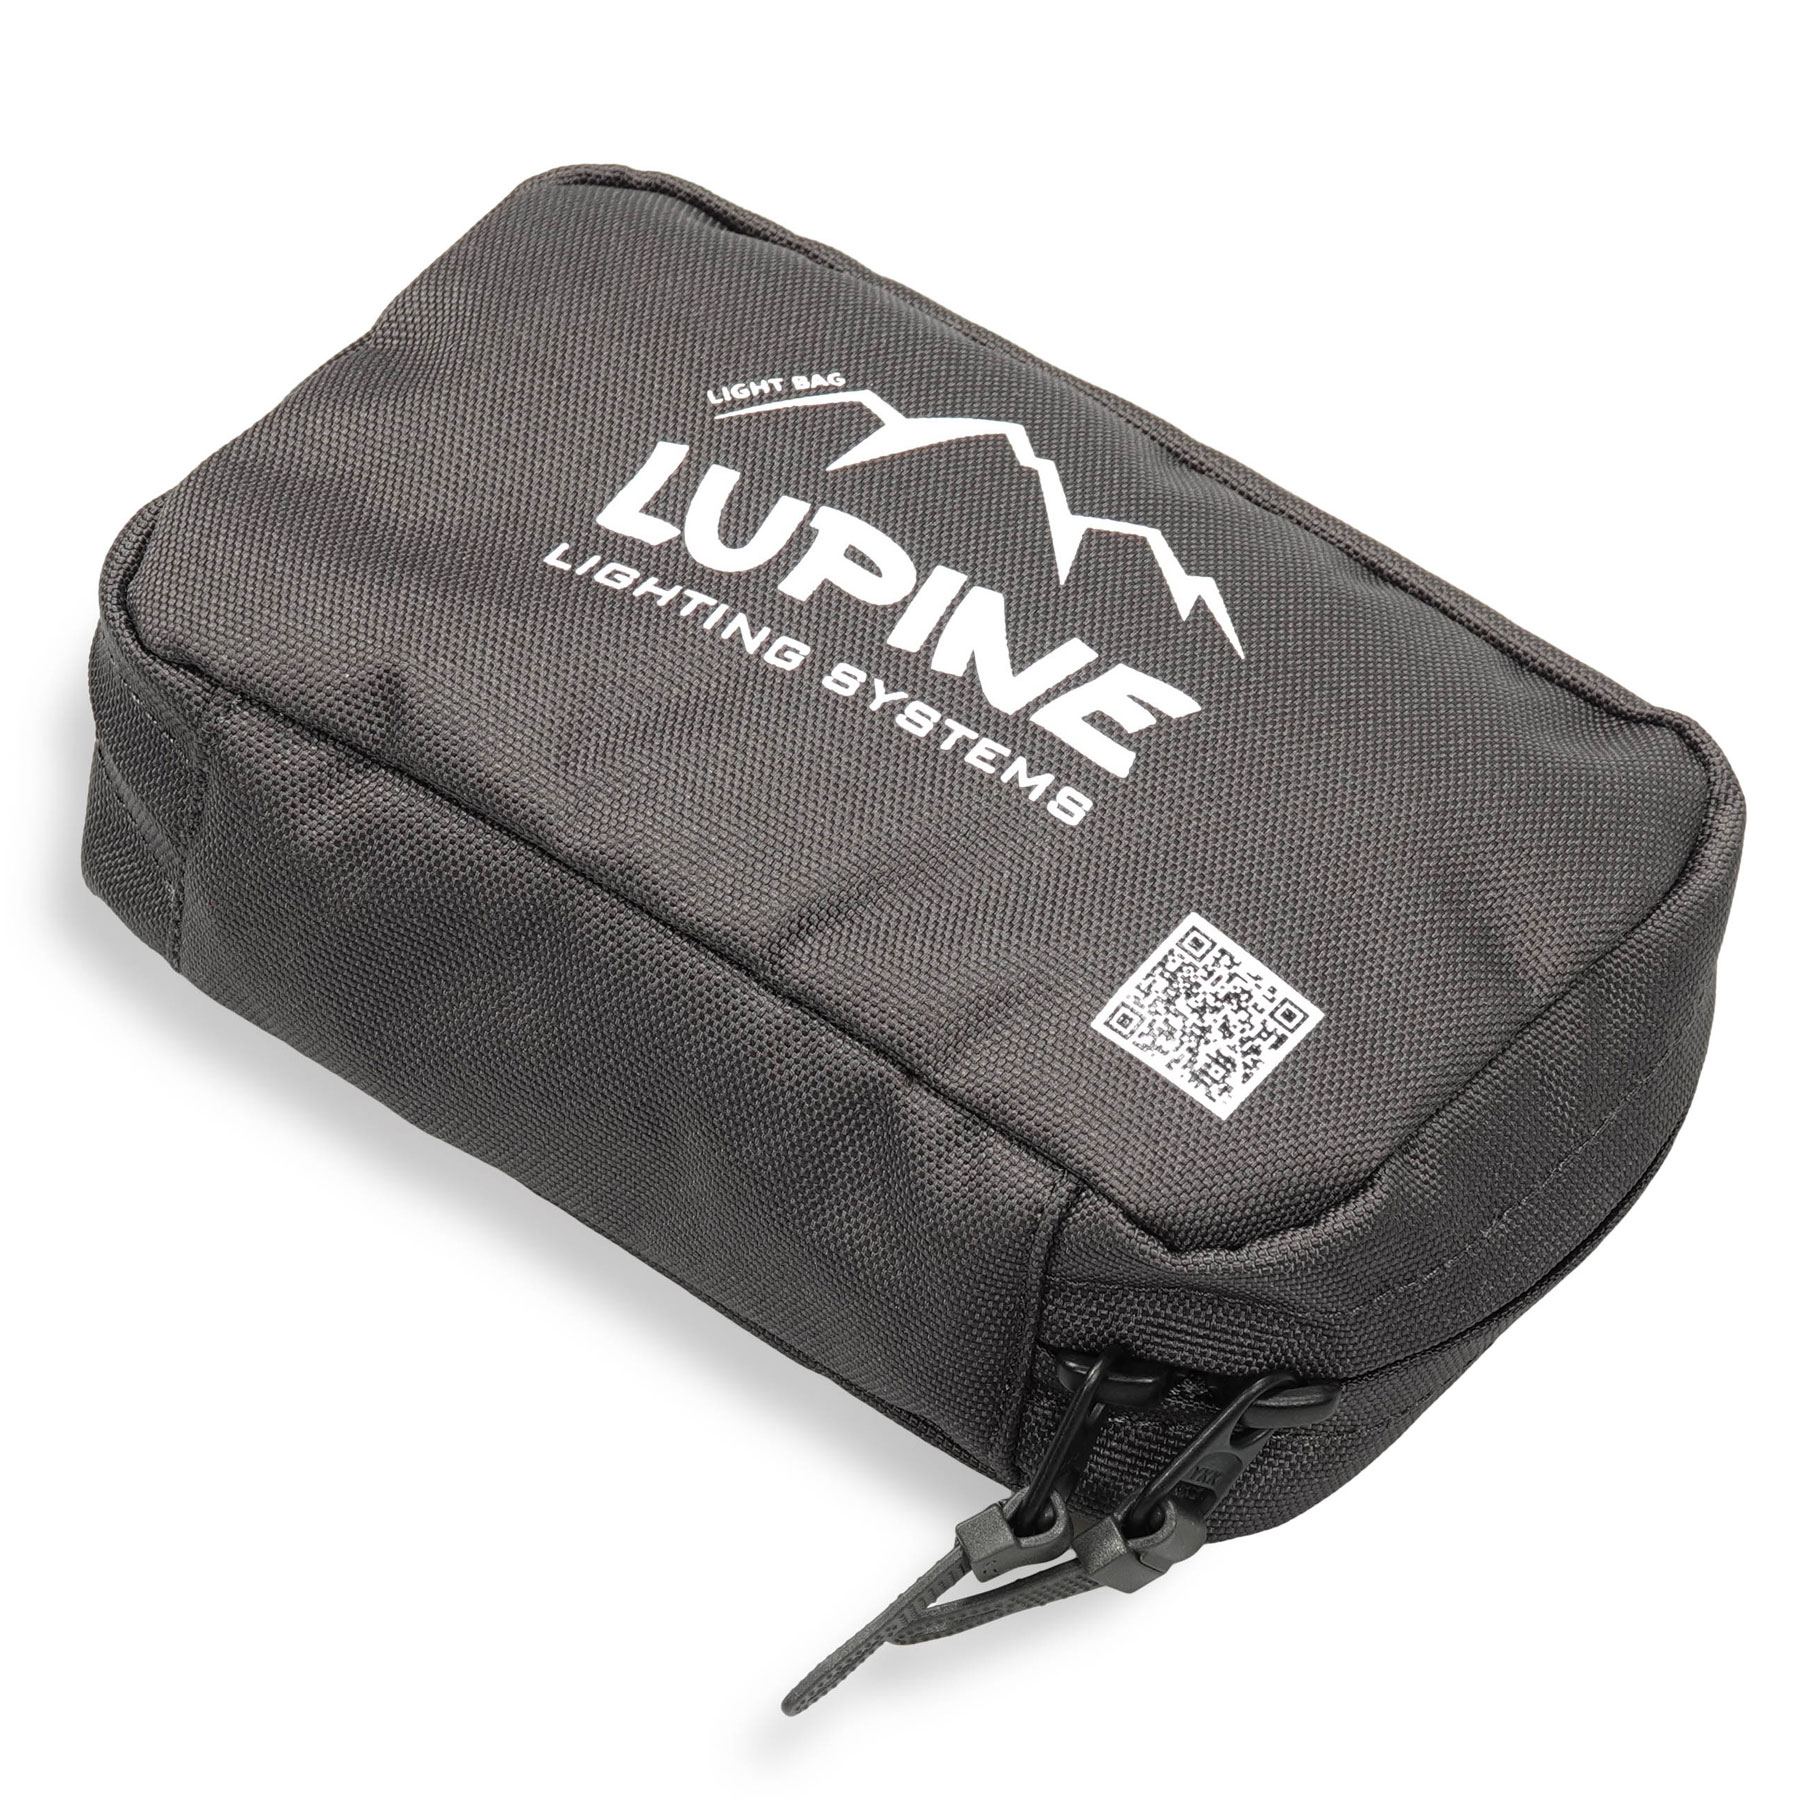 Produktbild von Lupine Light Bag - Lampentasche - Dunkelgrau